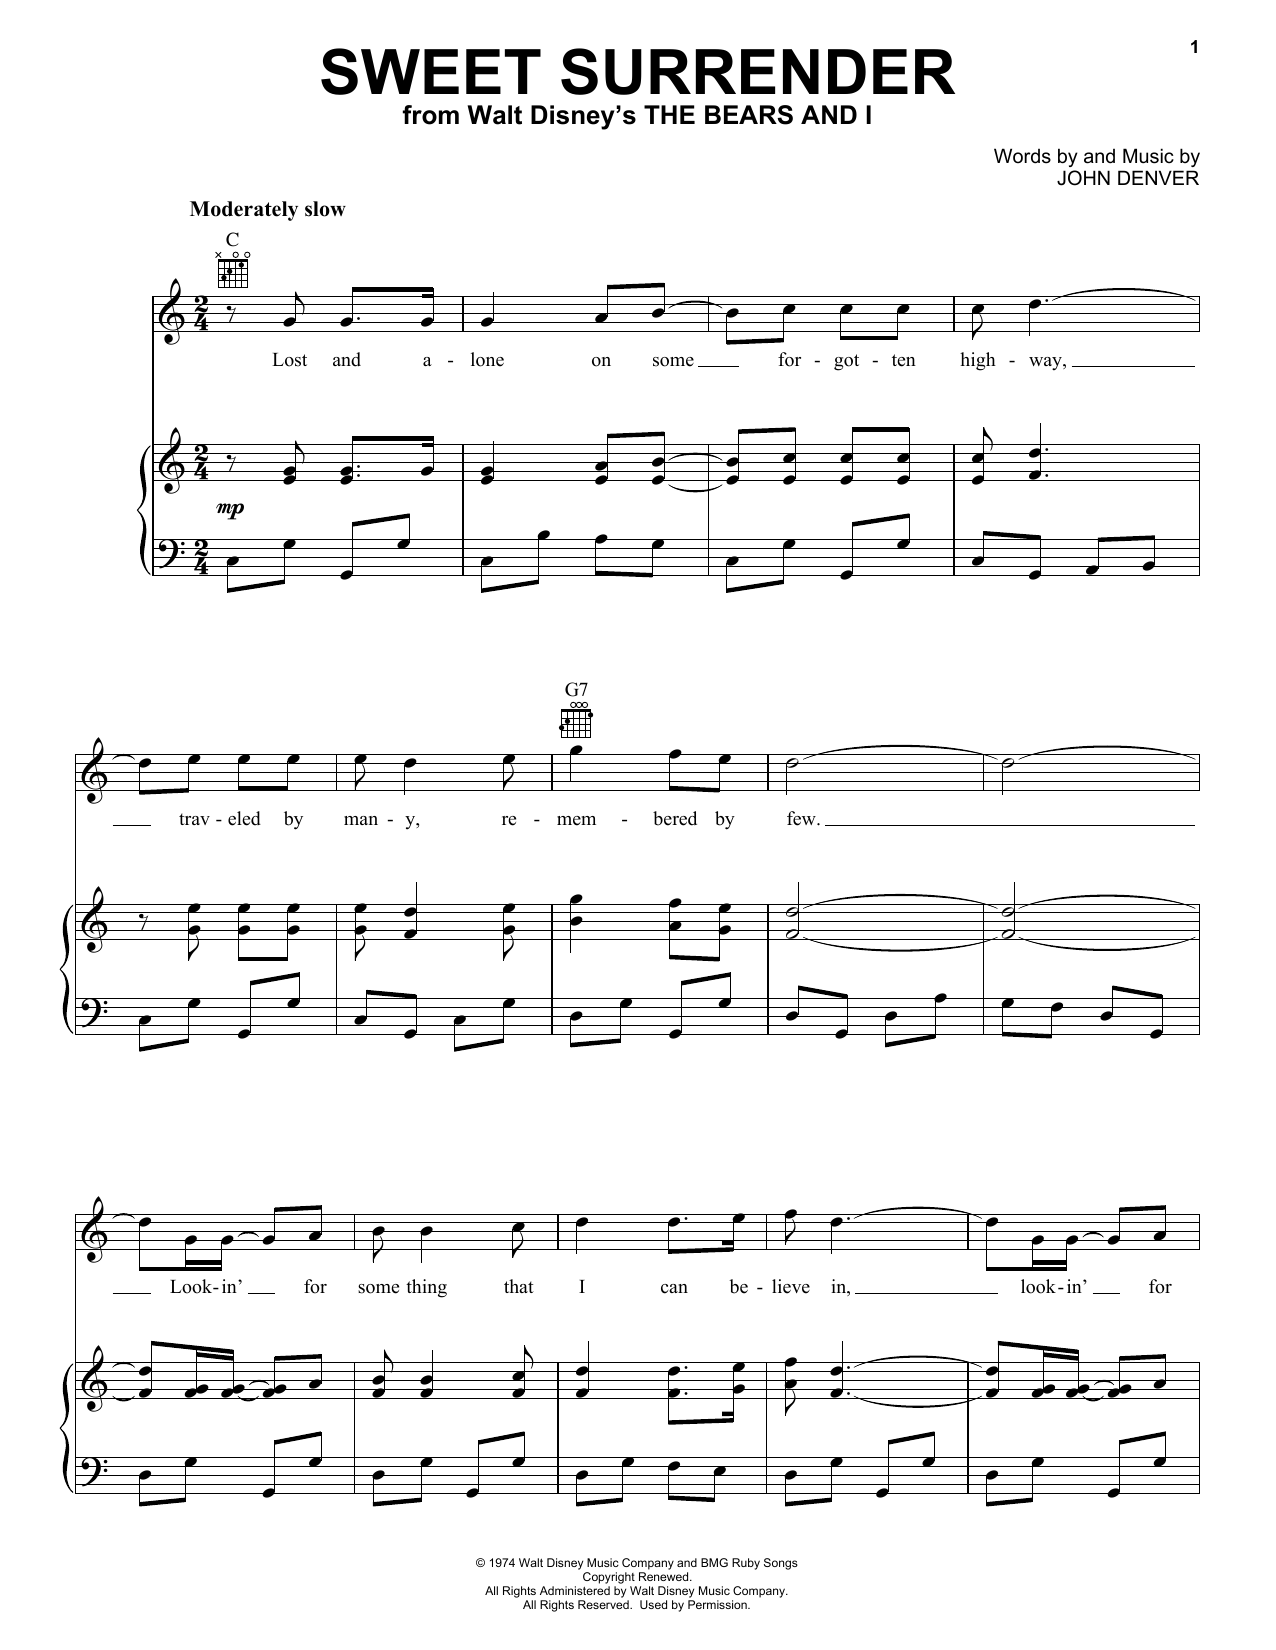 John Denver Sweet Surrender Sheet Music Notes & Chords for Flute - Download or Print PDF